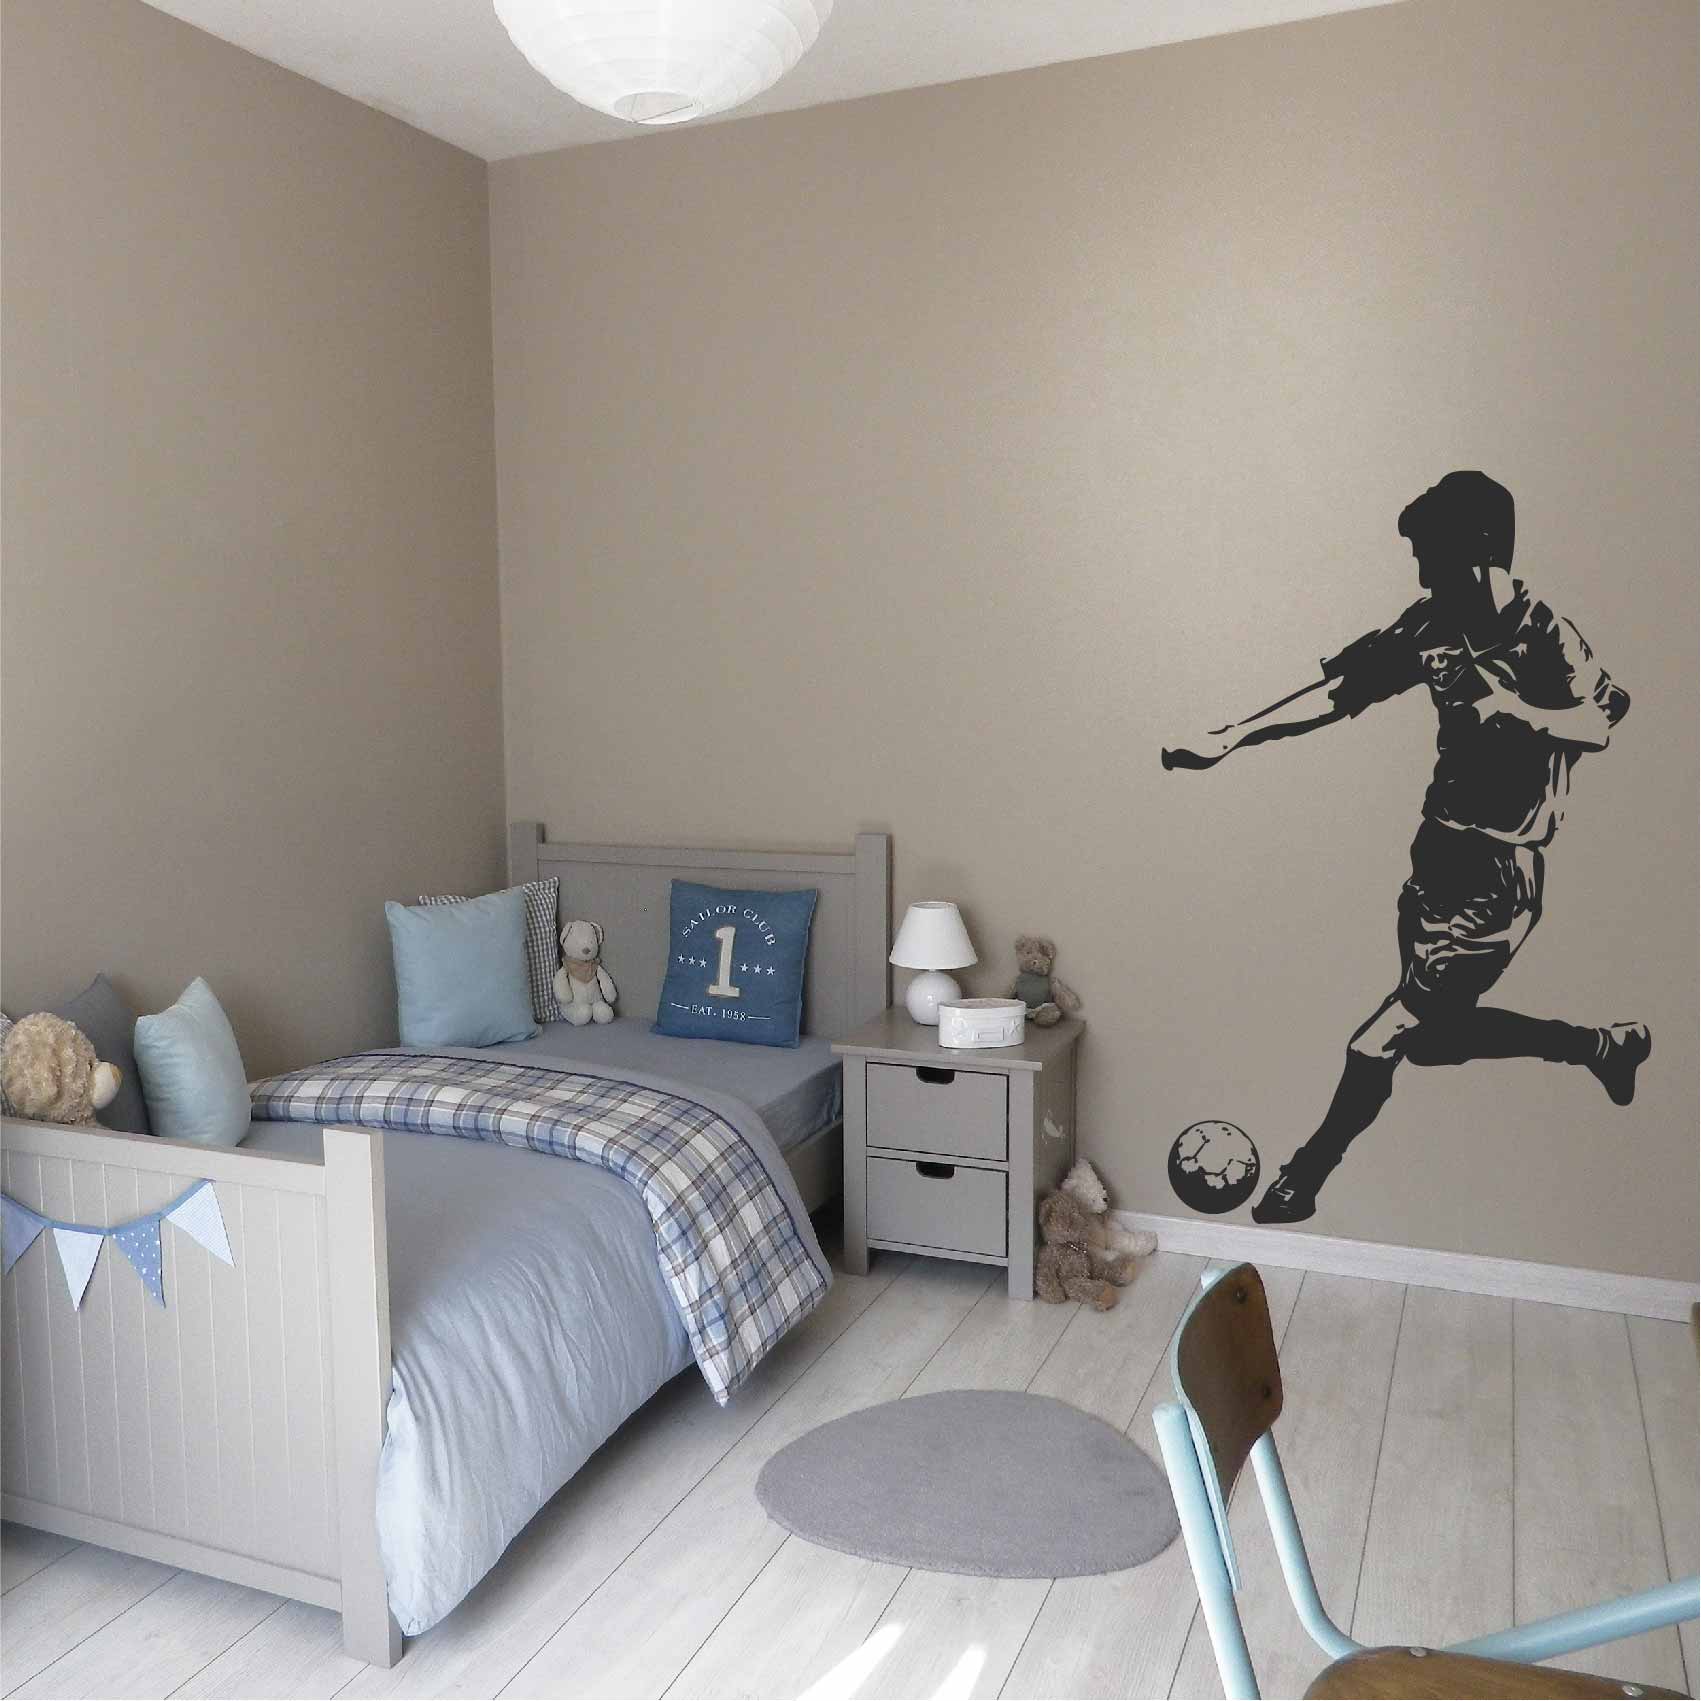 stickers-joueur-football-ref4diversgarcon-autocollant-muraux-deco-chambre-garçon-enfant-sticker-mural-salon